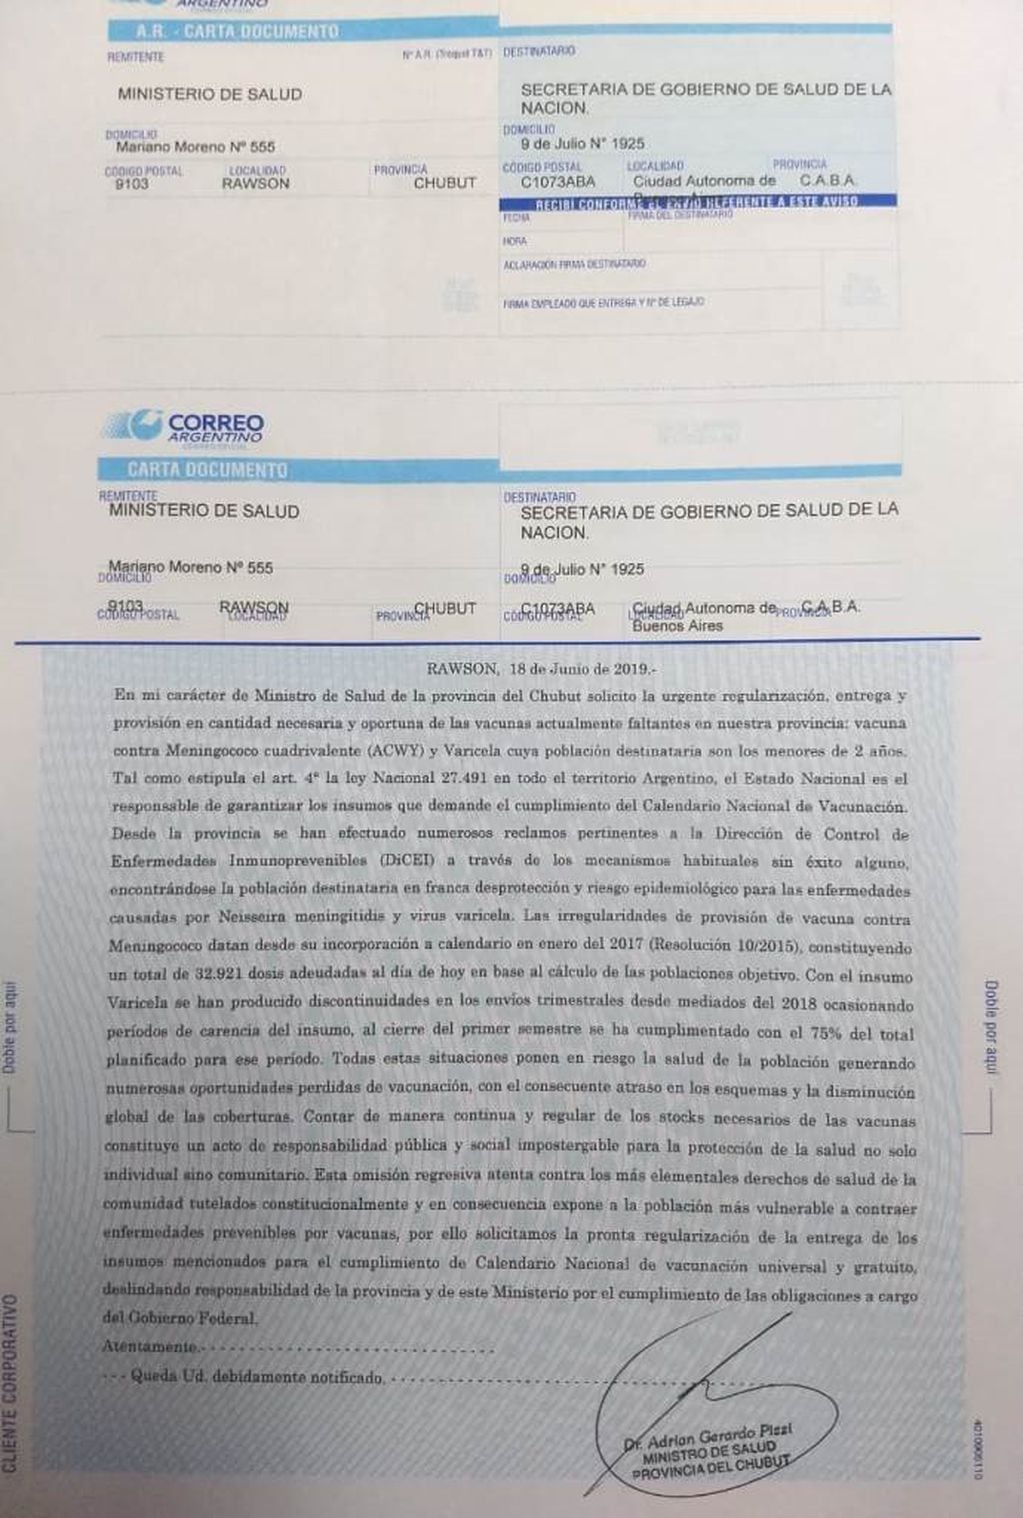 Carta documento de Ministerio de Salud de Chubut